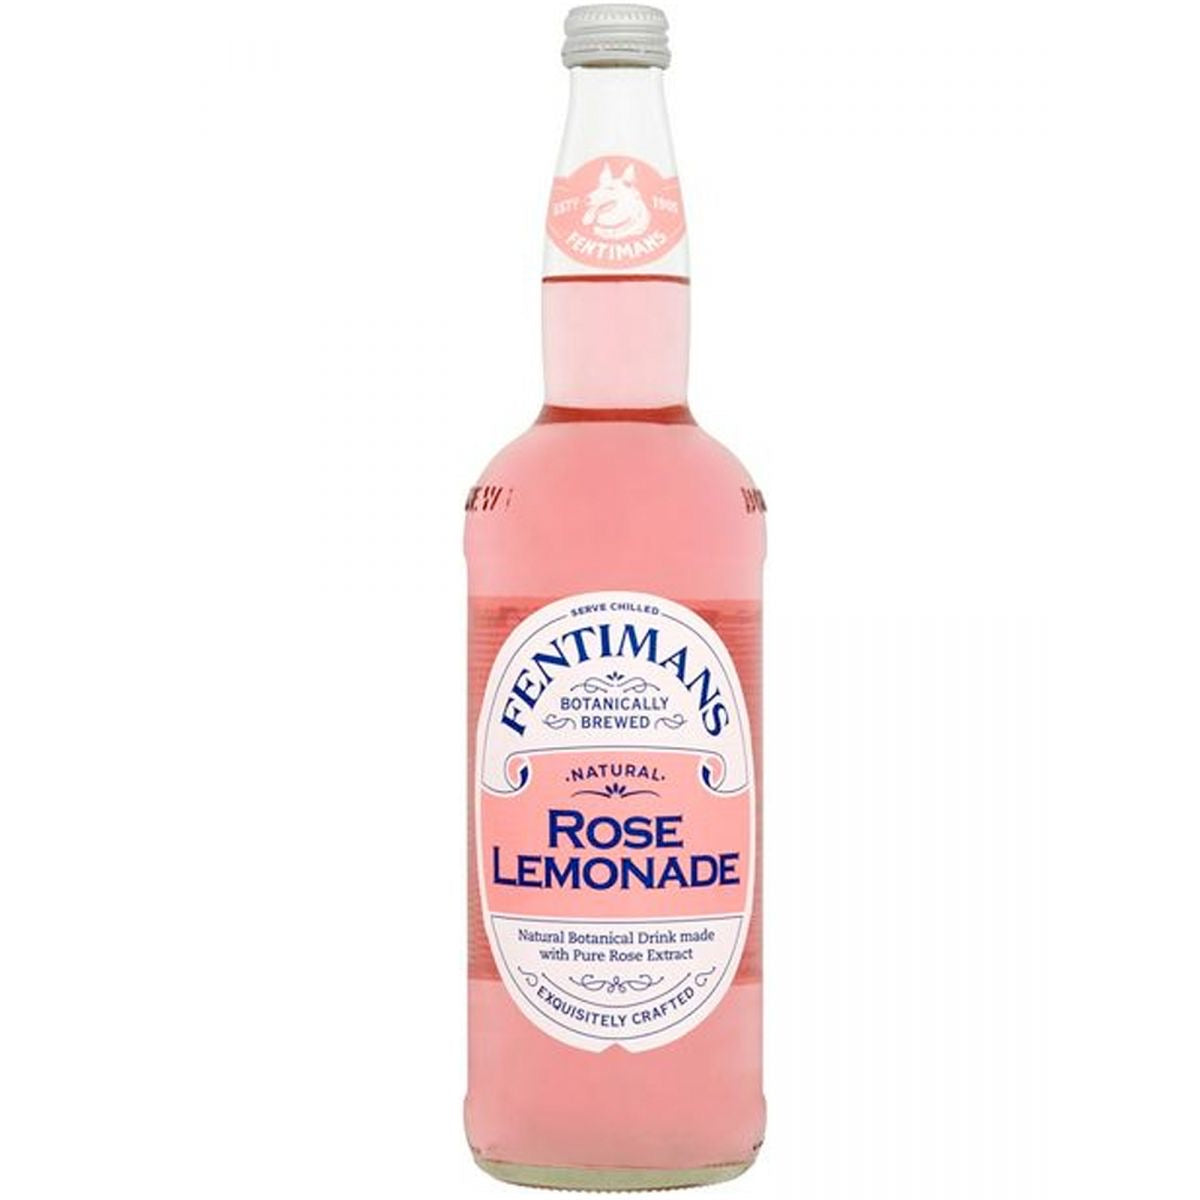 Rose Lemonade, Fentimans (750ml)